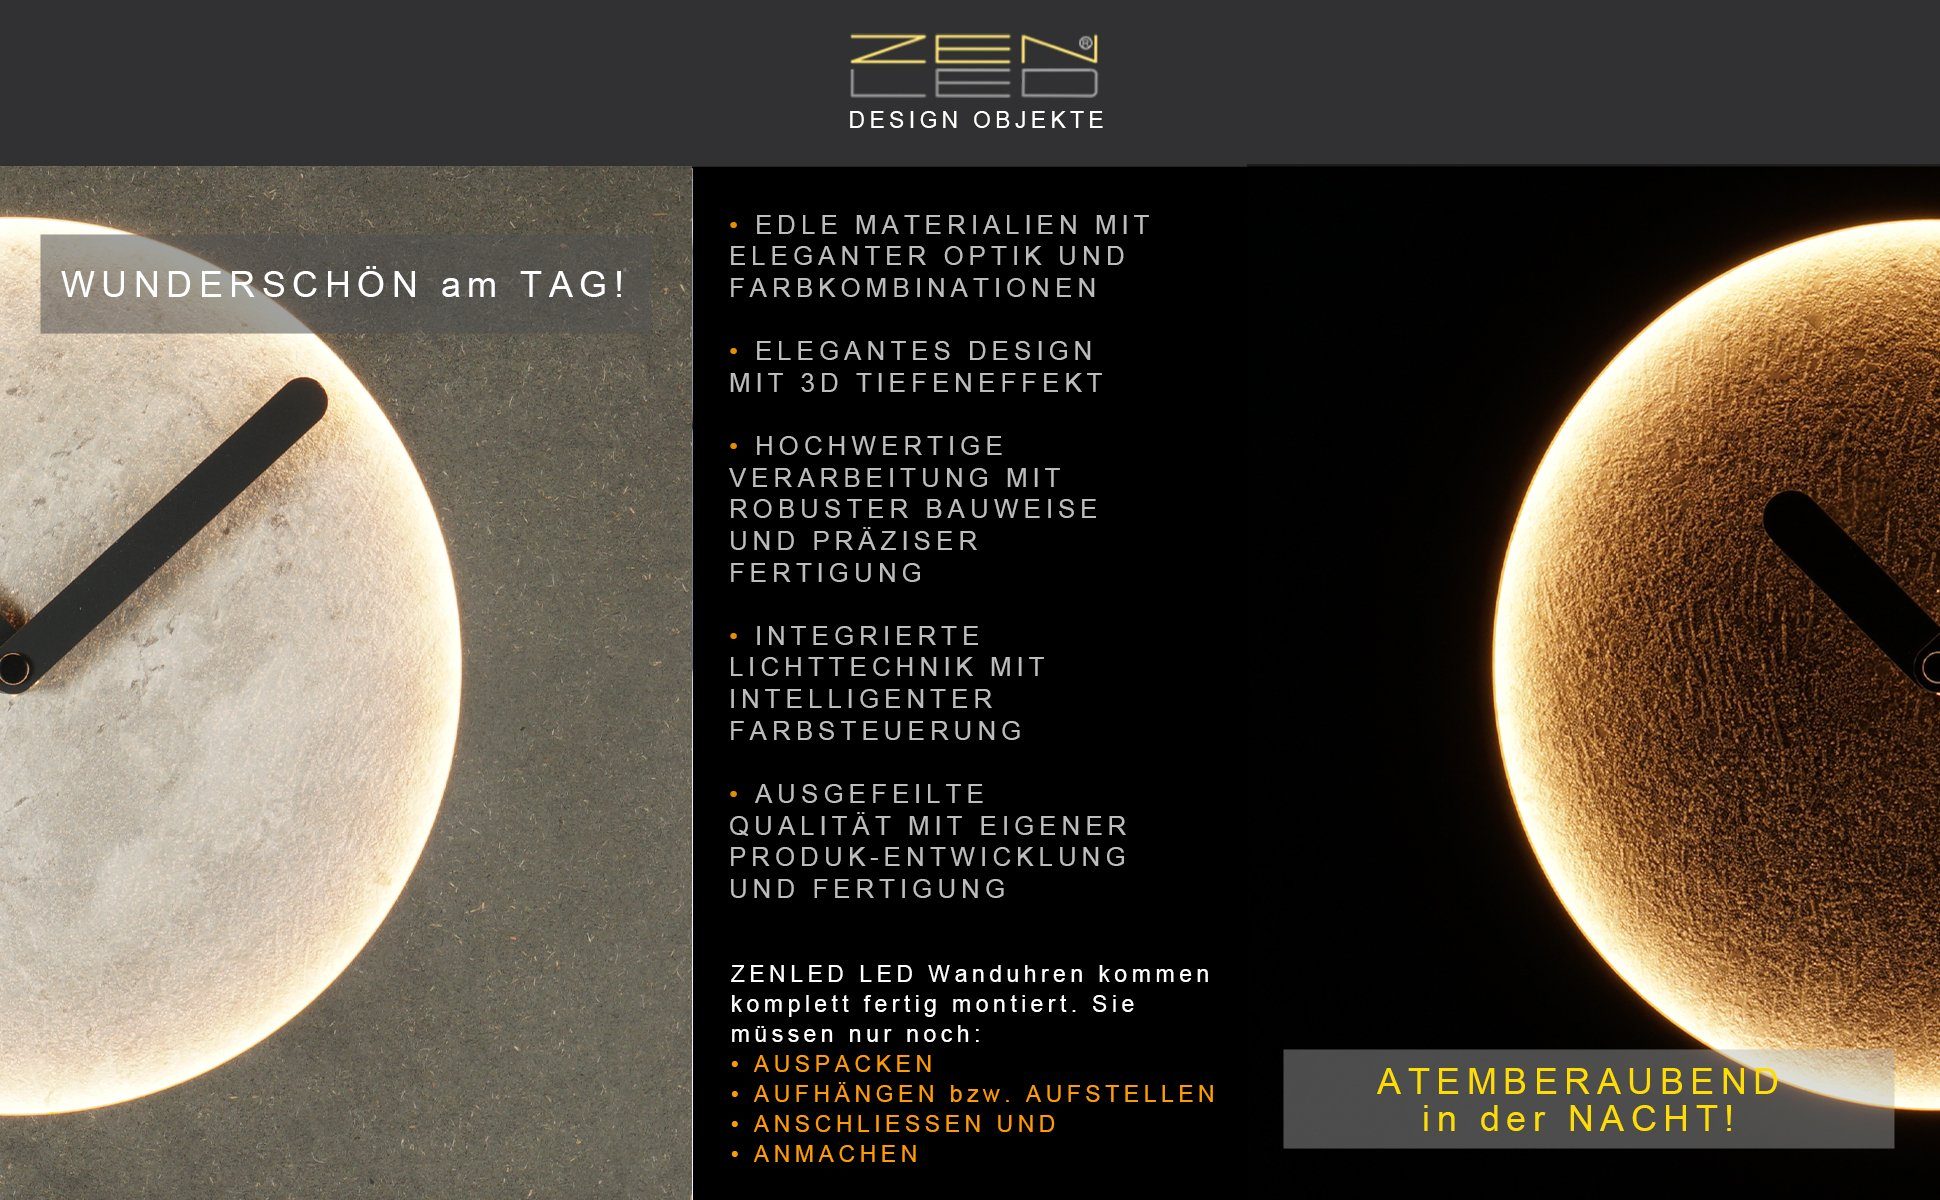 Edelrost-Optik Ø40cm (ausgeleuchtet über Deko mit Holz - Fernbedienung) LUNA Wandobjekt warm-weiss ZENLED RUND LEDs Mond mit steuerbaren Holz 3D-Lichteffekt Design Wanduhr